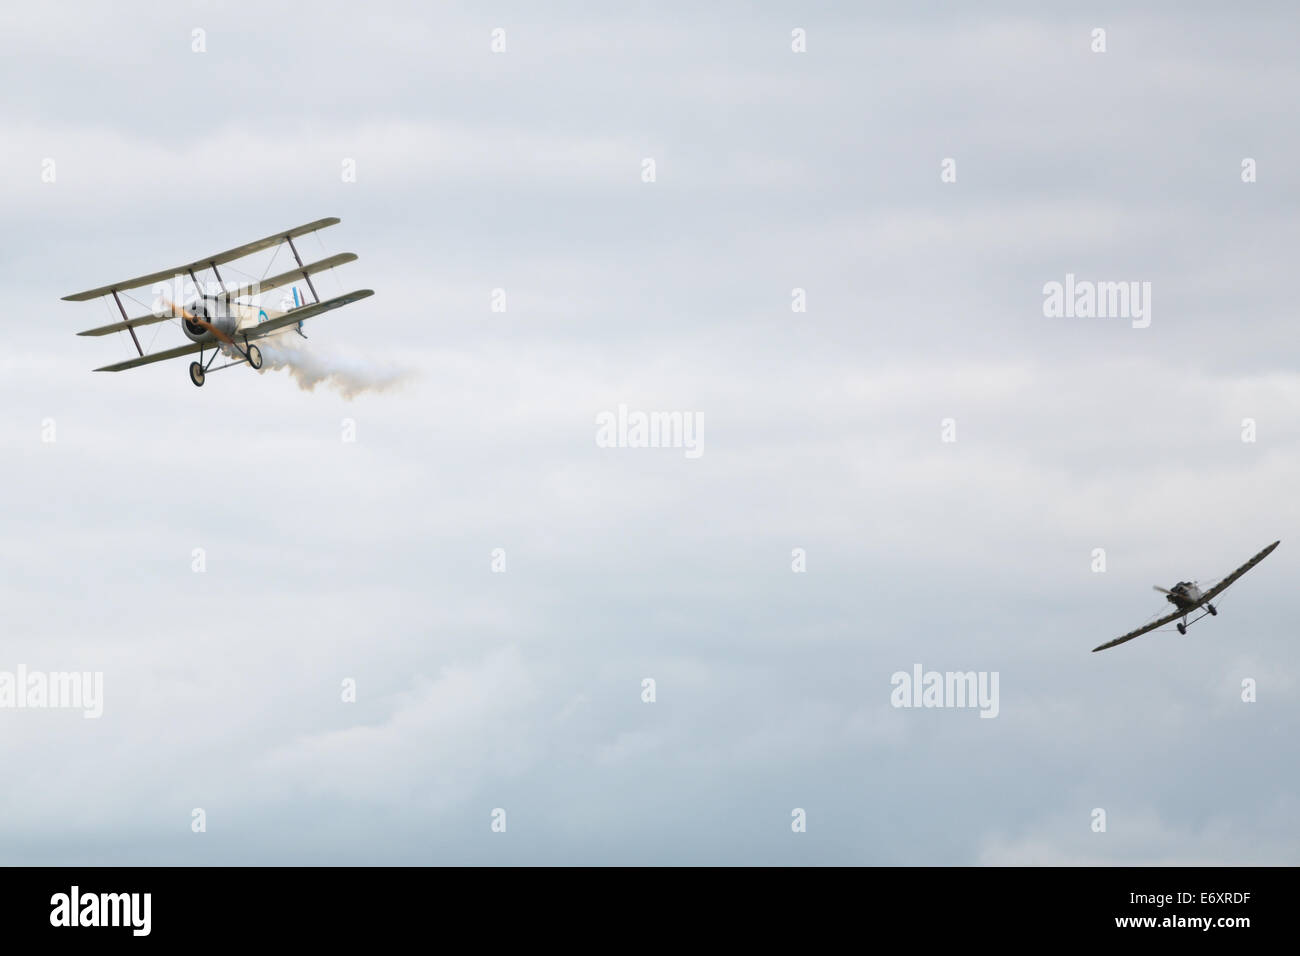 C'est une simulation de combat de chiens avec la Grande Guerre de l'équipe d'affichage à Shoreham Airshow 2014, l'aéroport de Shoreham, East Sussex, 2014. Ici un S Banque D'Images